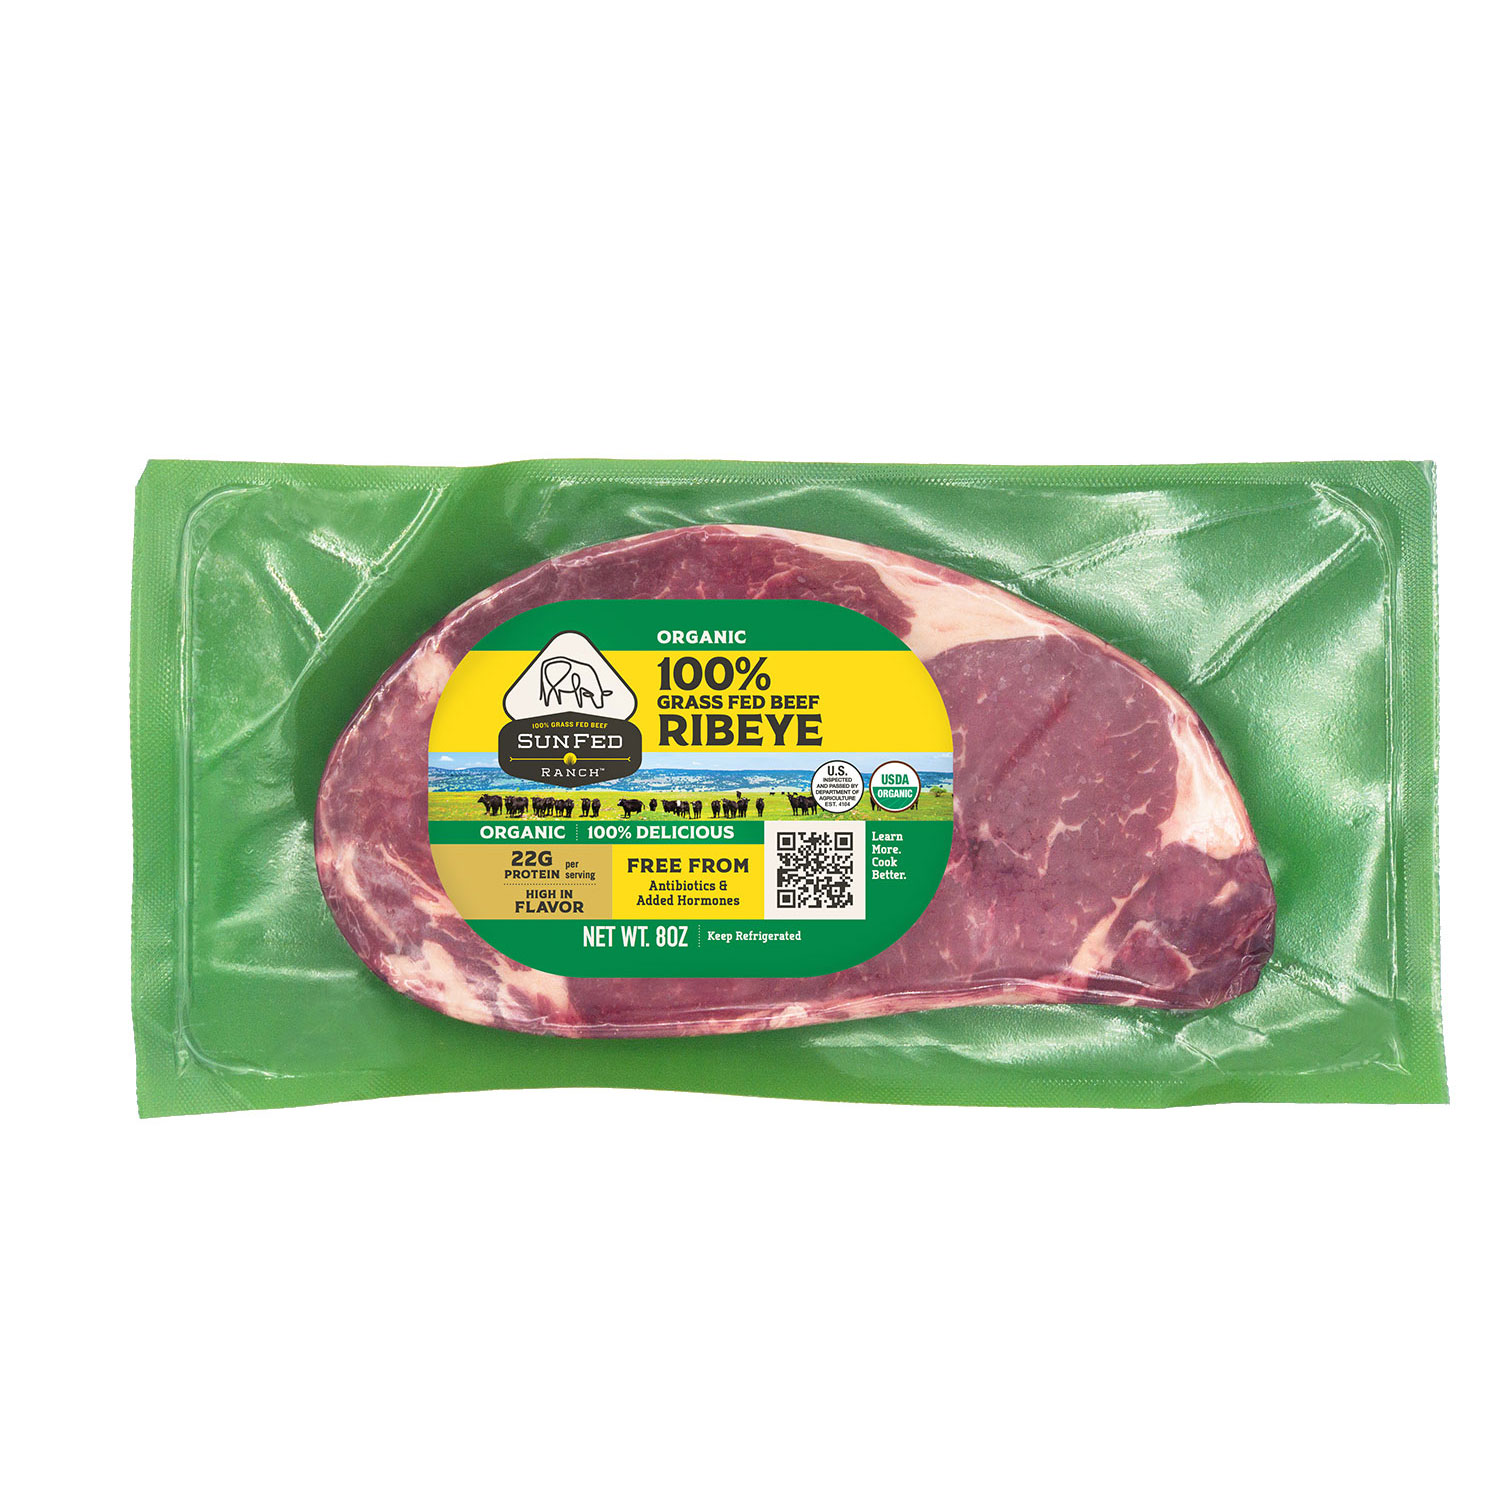 Organic Ribeye Steak